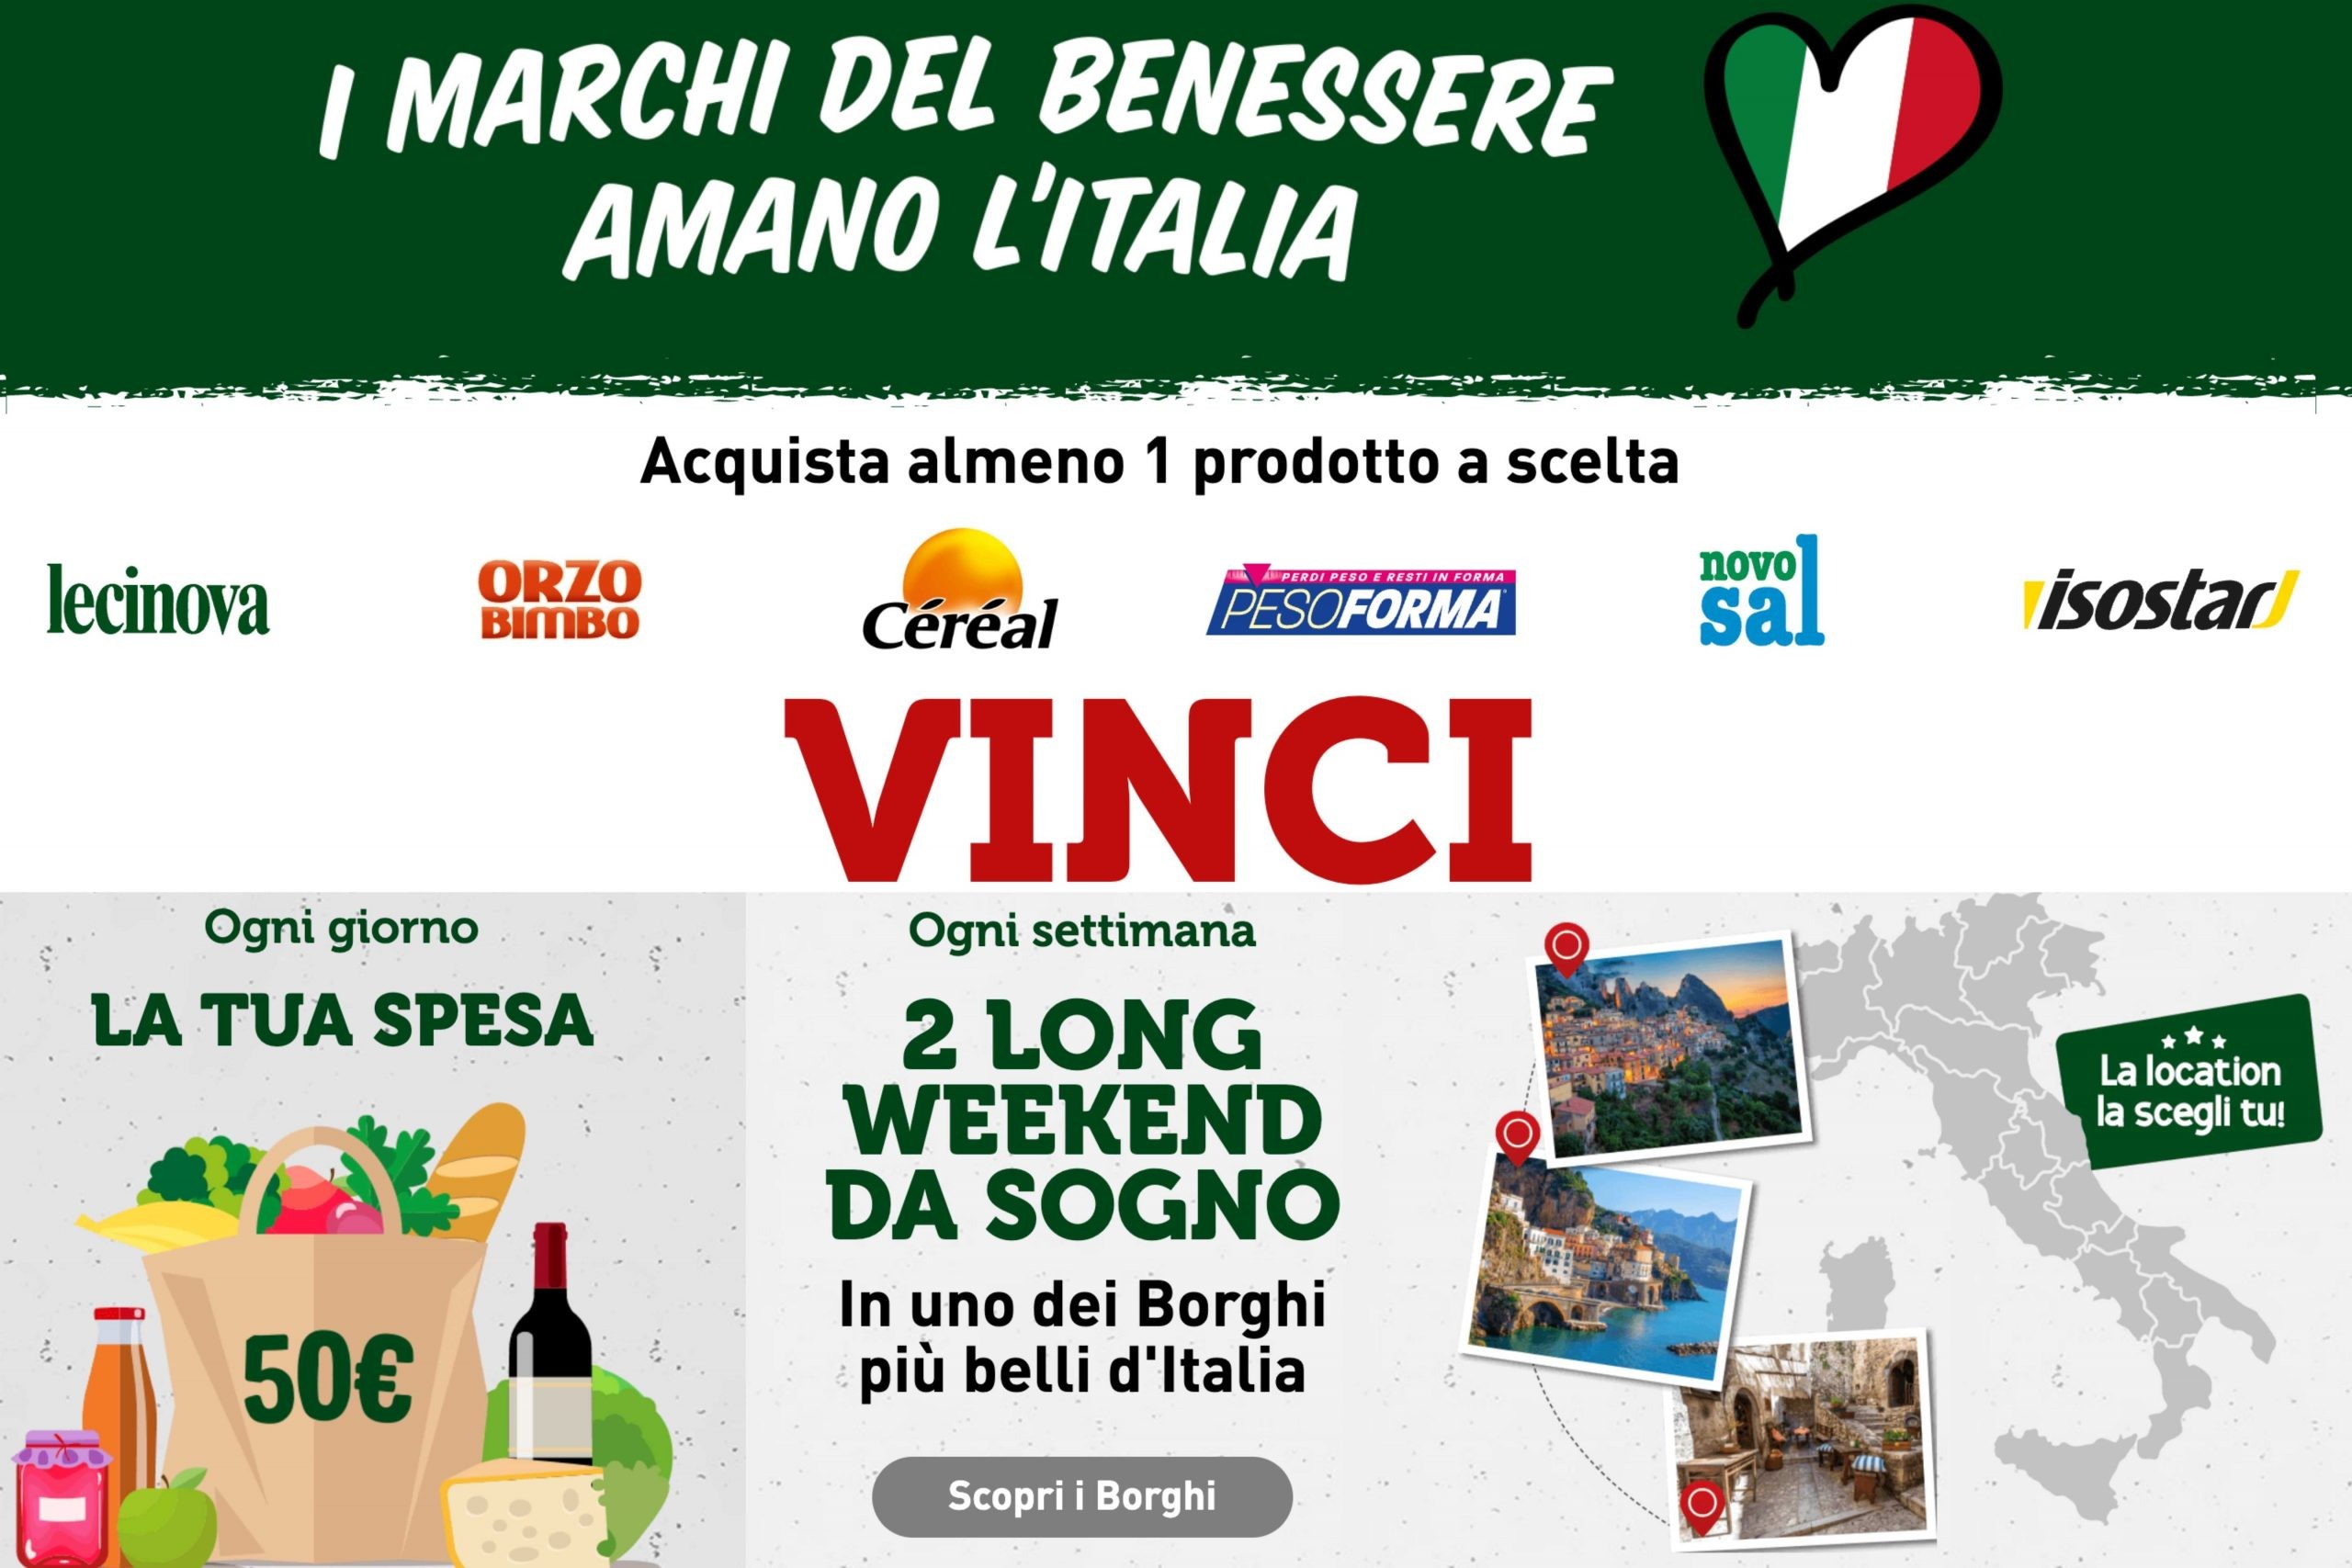 Concorso “I marchi del benessere amano l’Italia”: come vincere un buono spesa da 50€ e un voucher long weekend